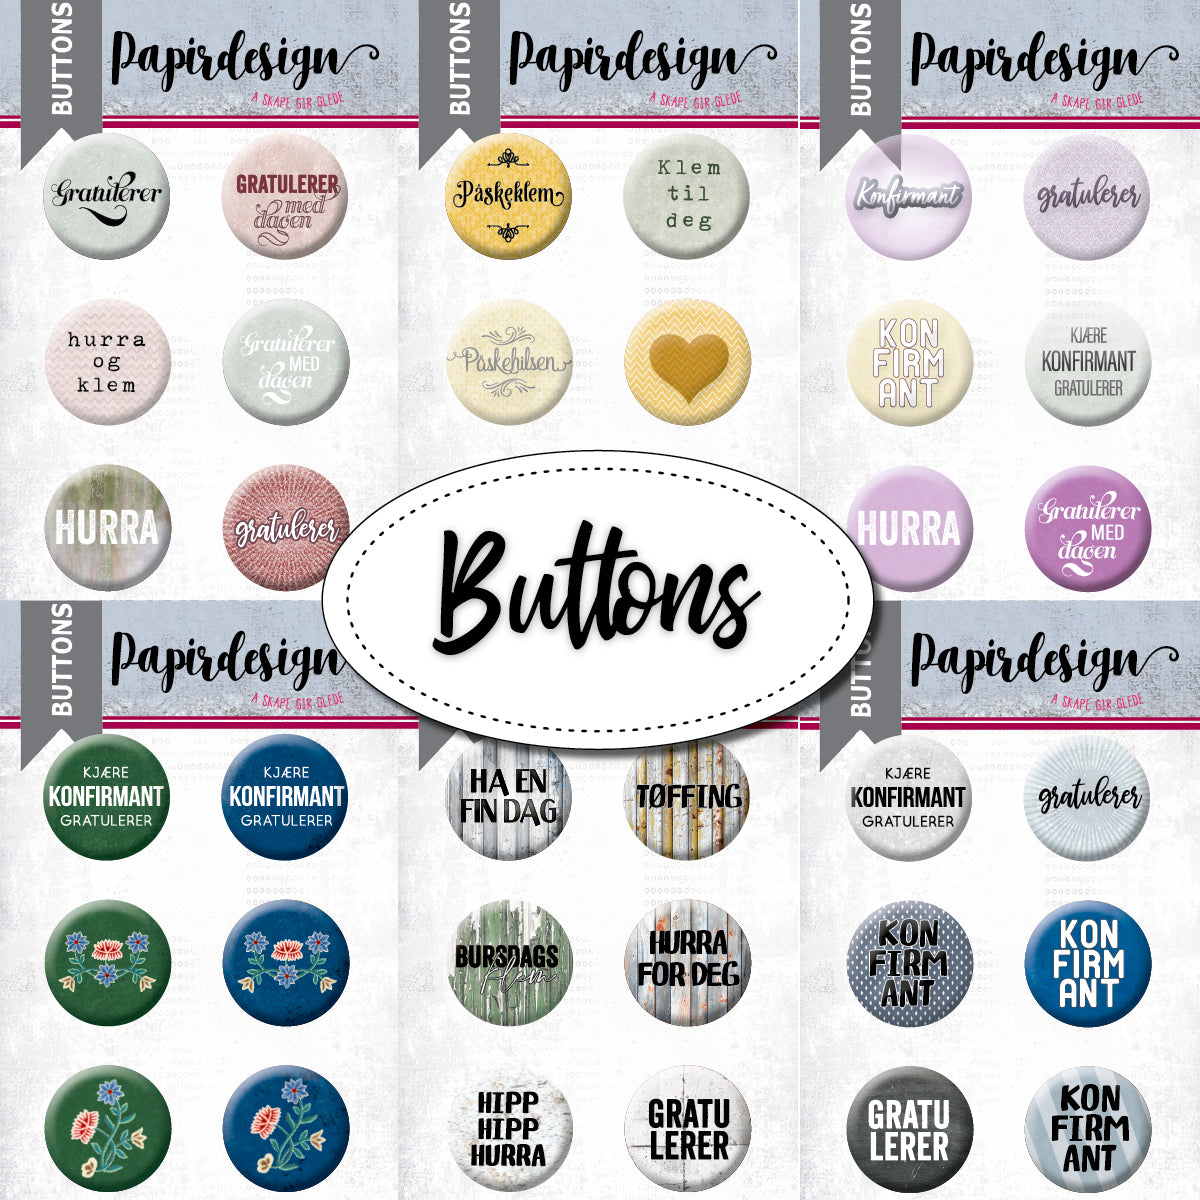 Papirdesign - Buttons